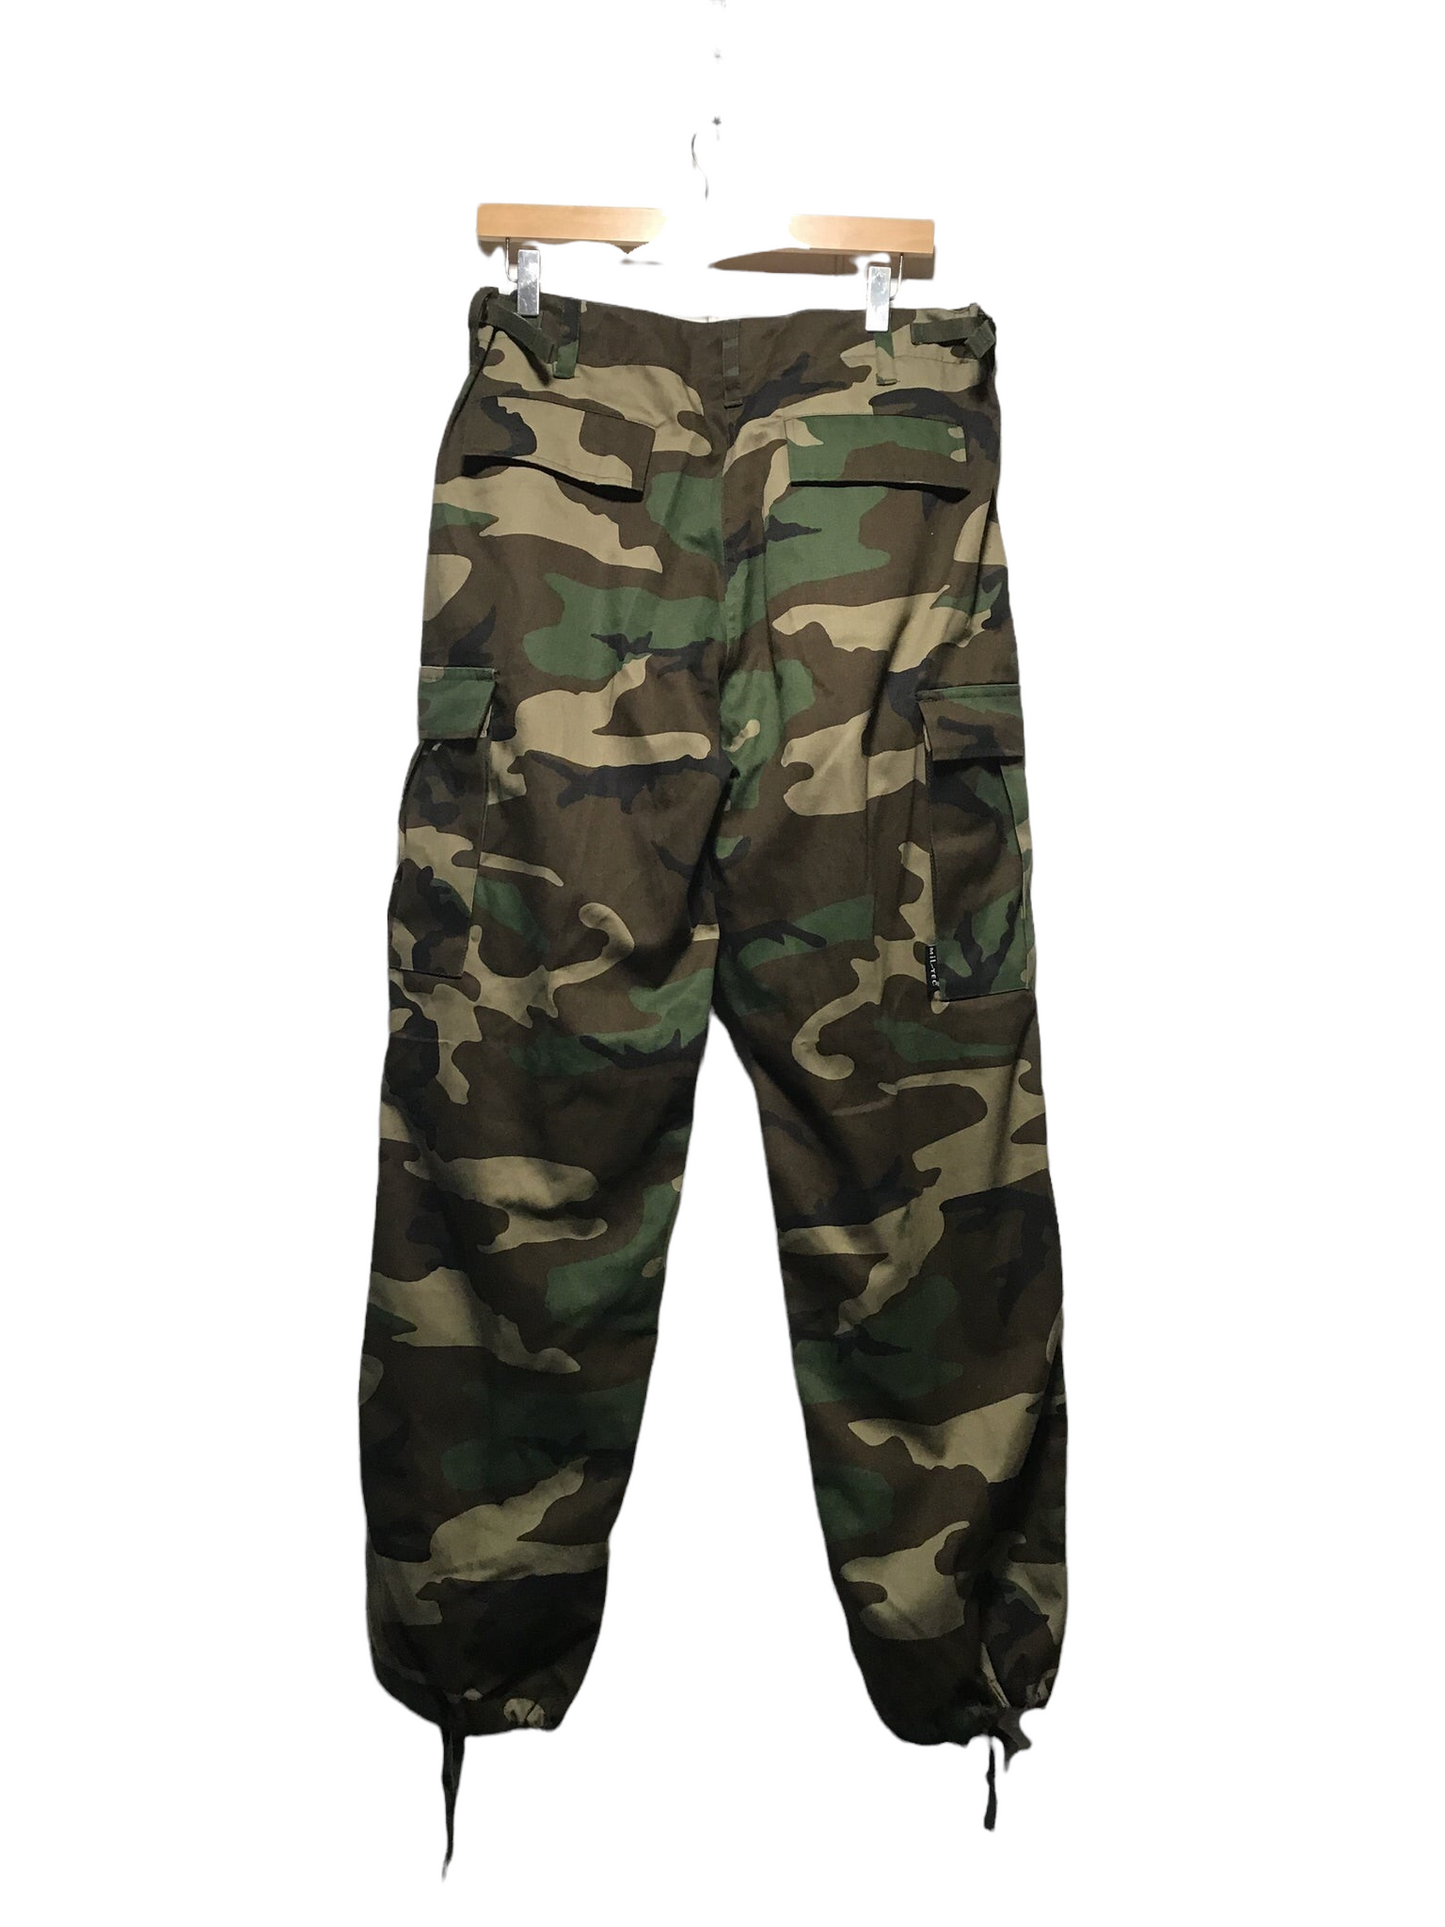 Army Pants (32X30)